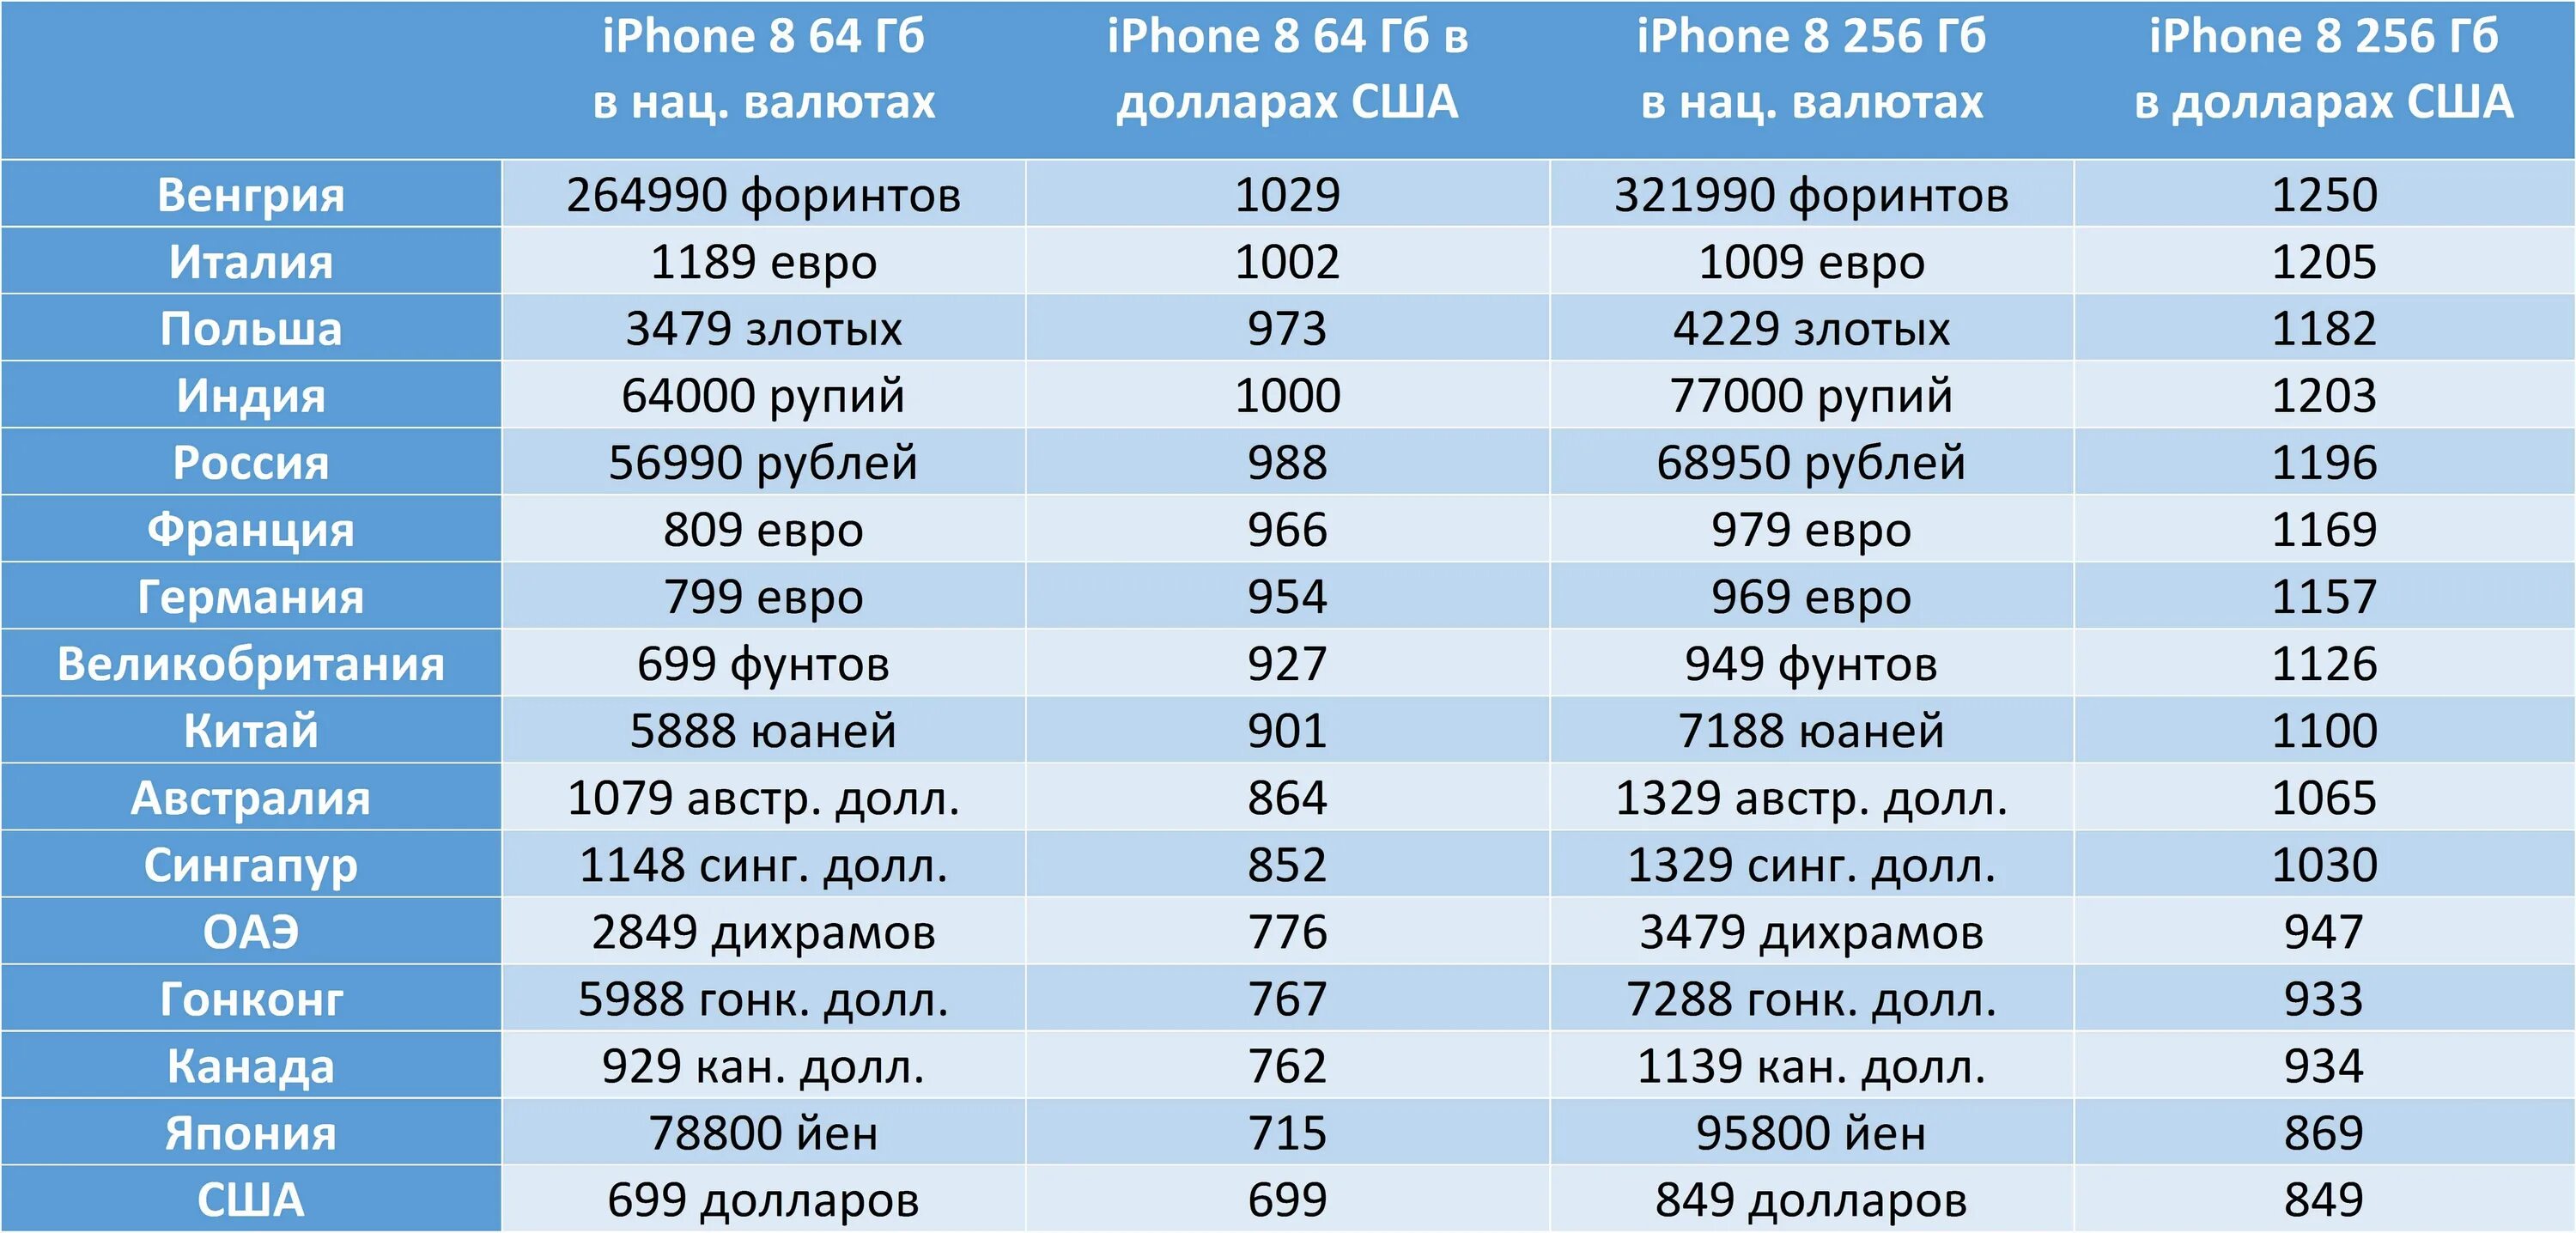 Какие страны покупают айфоны. Количество проданных айфонов по странам. Количество айфонов в Америке. Самые дешевые айфоны по странам. В какой стране продаются самые дешевые айфоны.